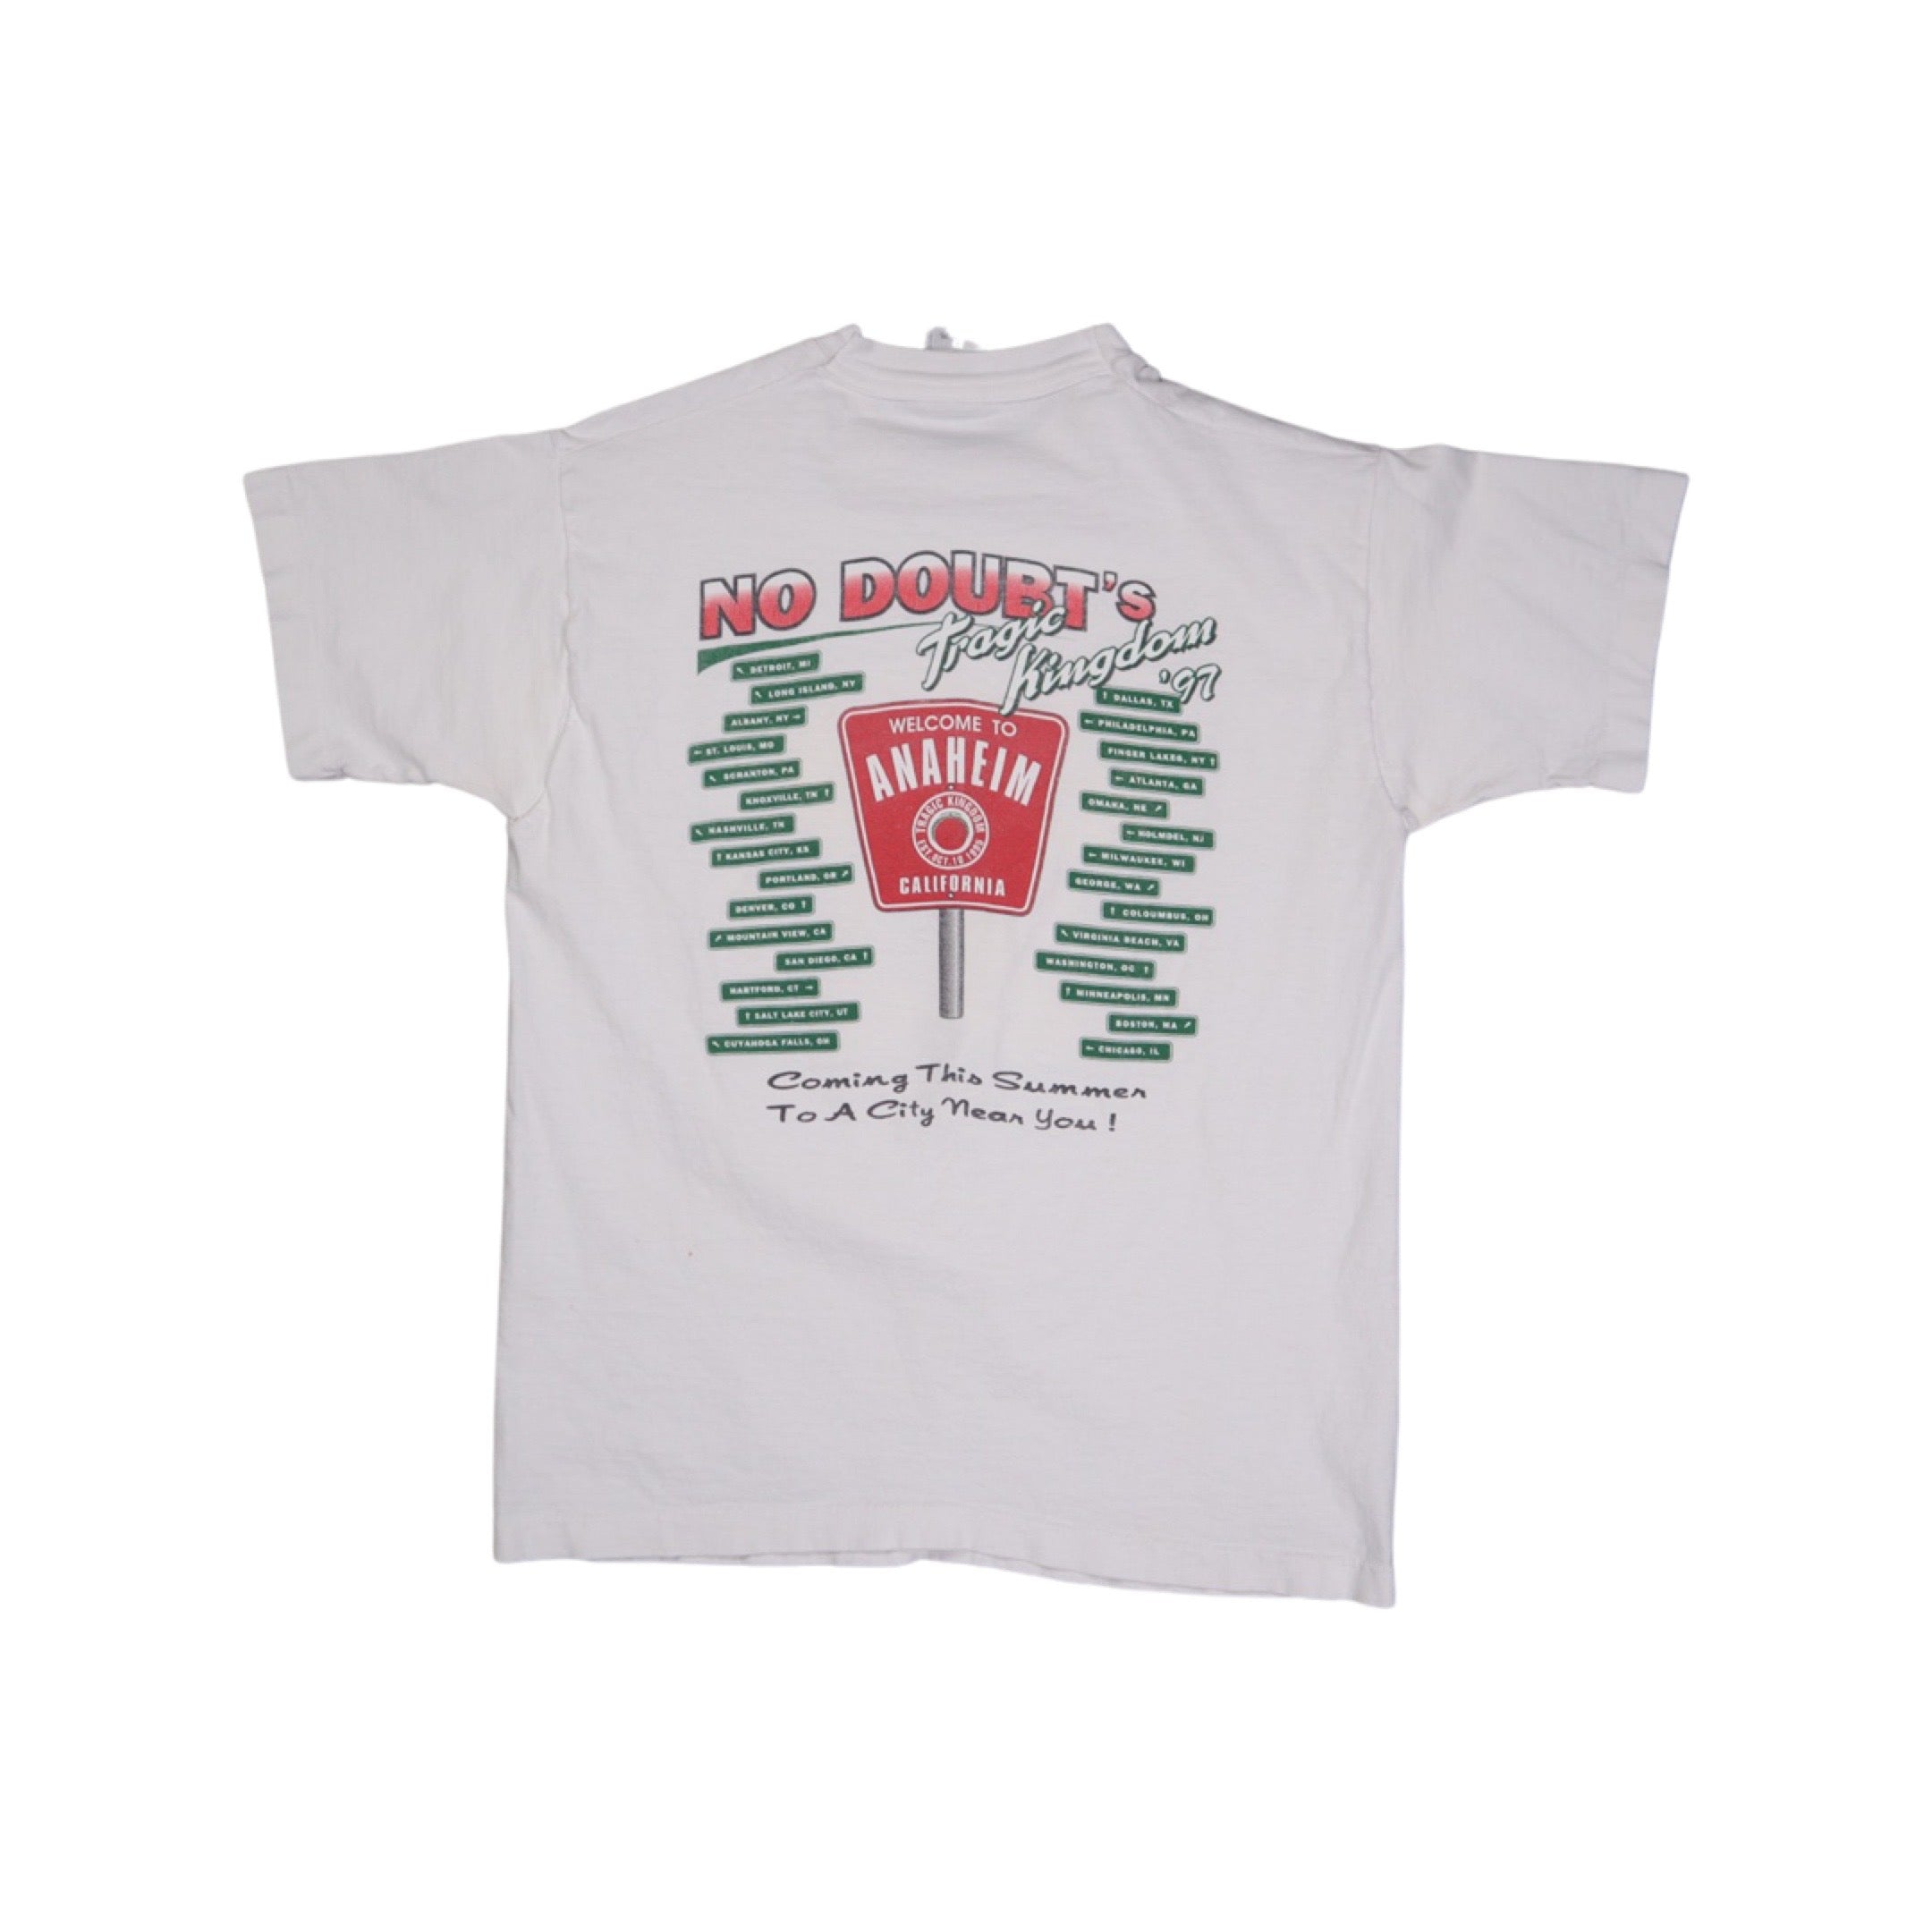 No Doubt 1997 Tour T-Shirt Grail (Small)